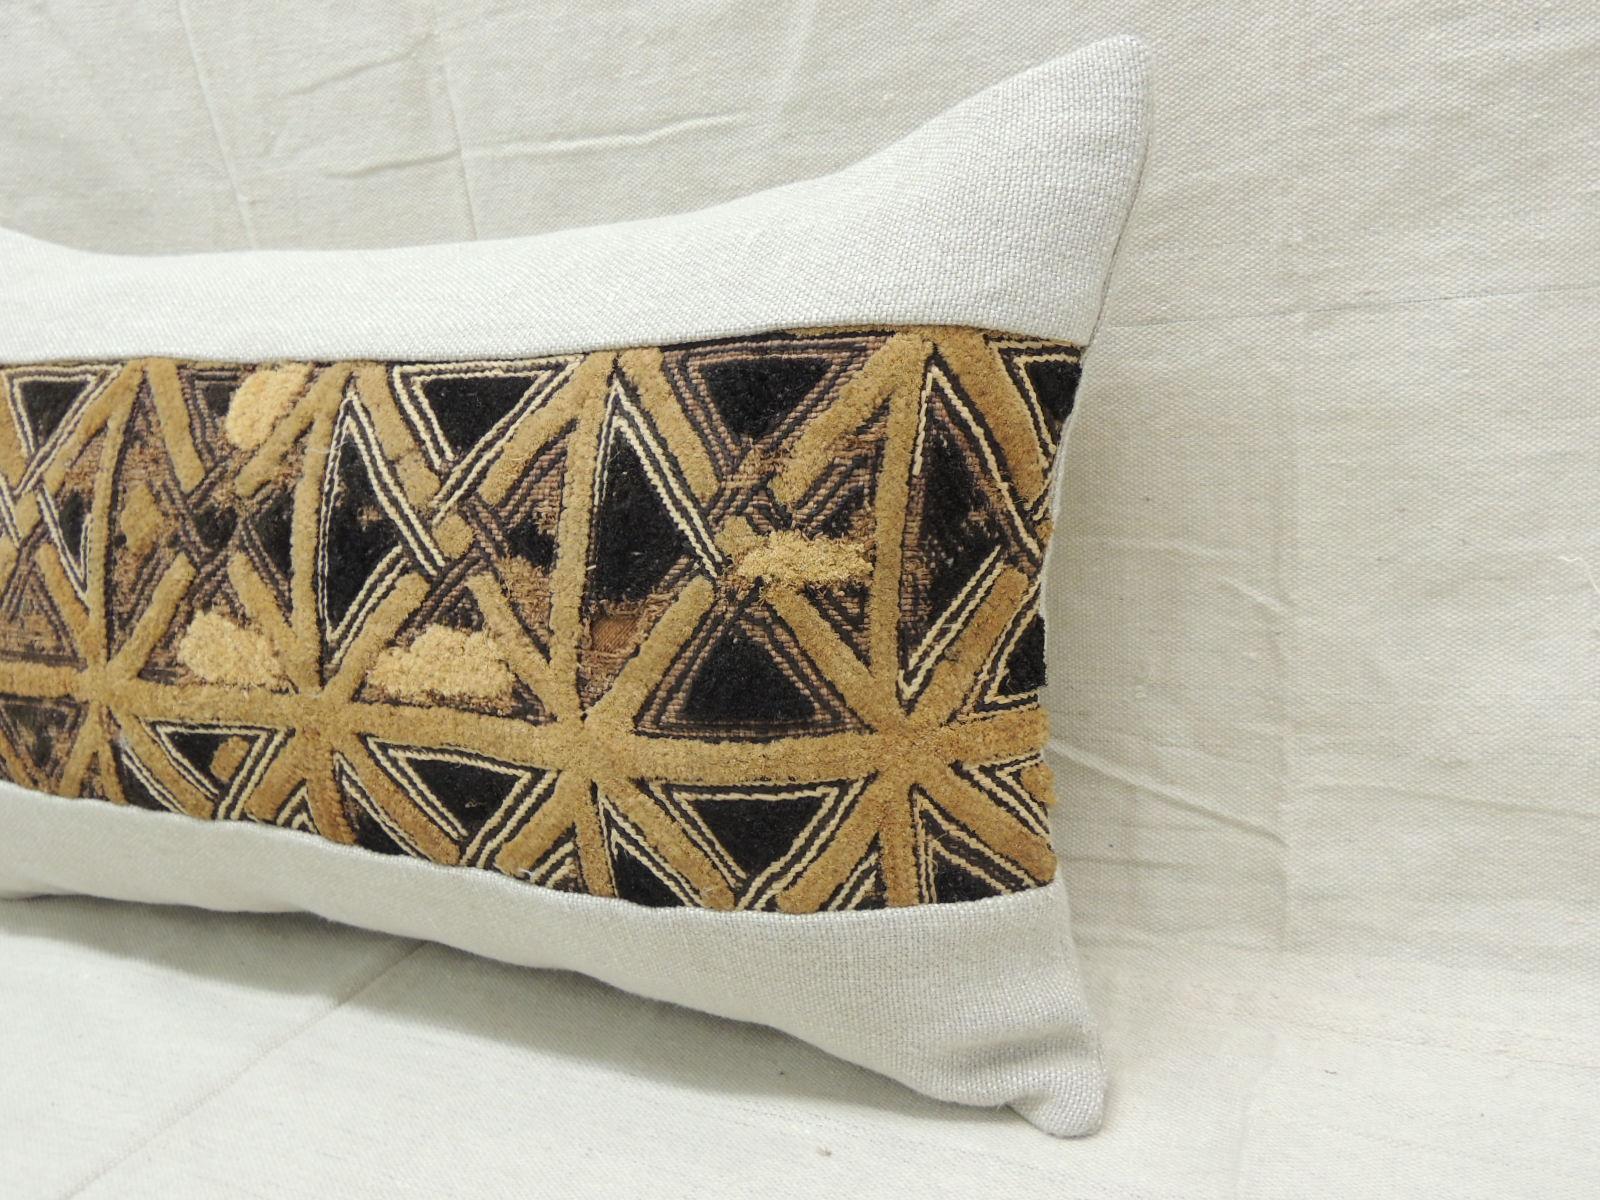 Tribal Vintage Tan and Black African Kuba Lumbar Decorative Pillow